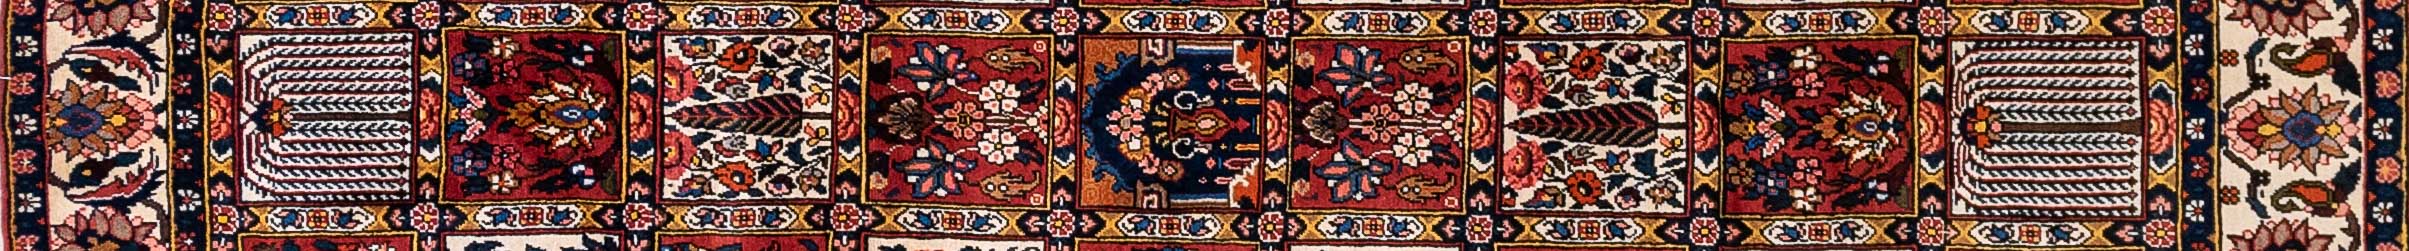 Bakhtiar Four season Persian Carpet Rug N1Carpet Canada Montreal Tapis Persan 1850